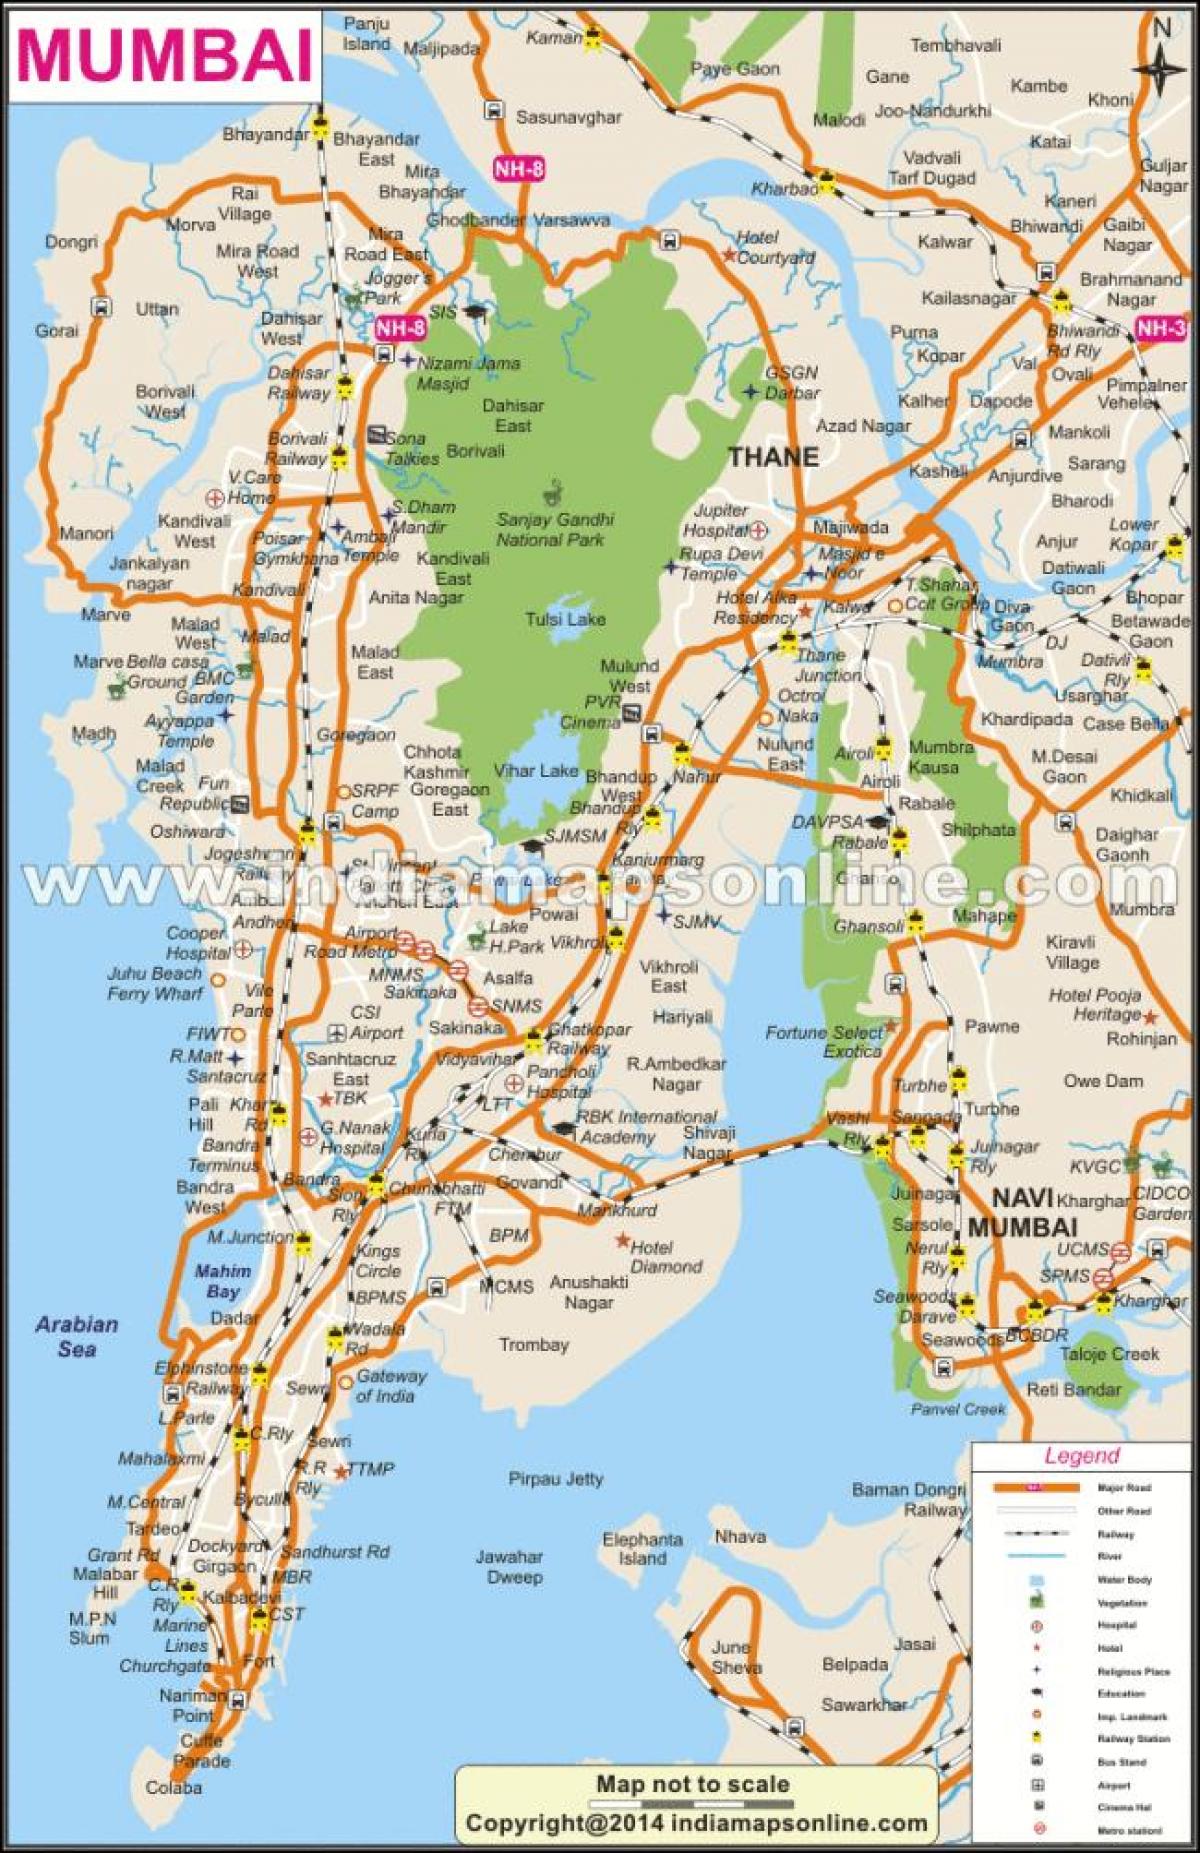 peta Mumbai tempatan